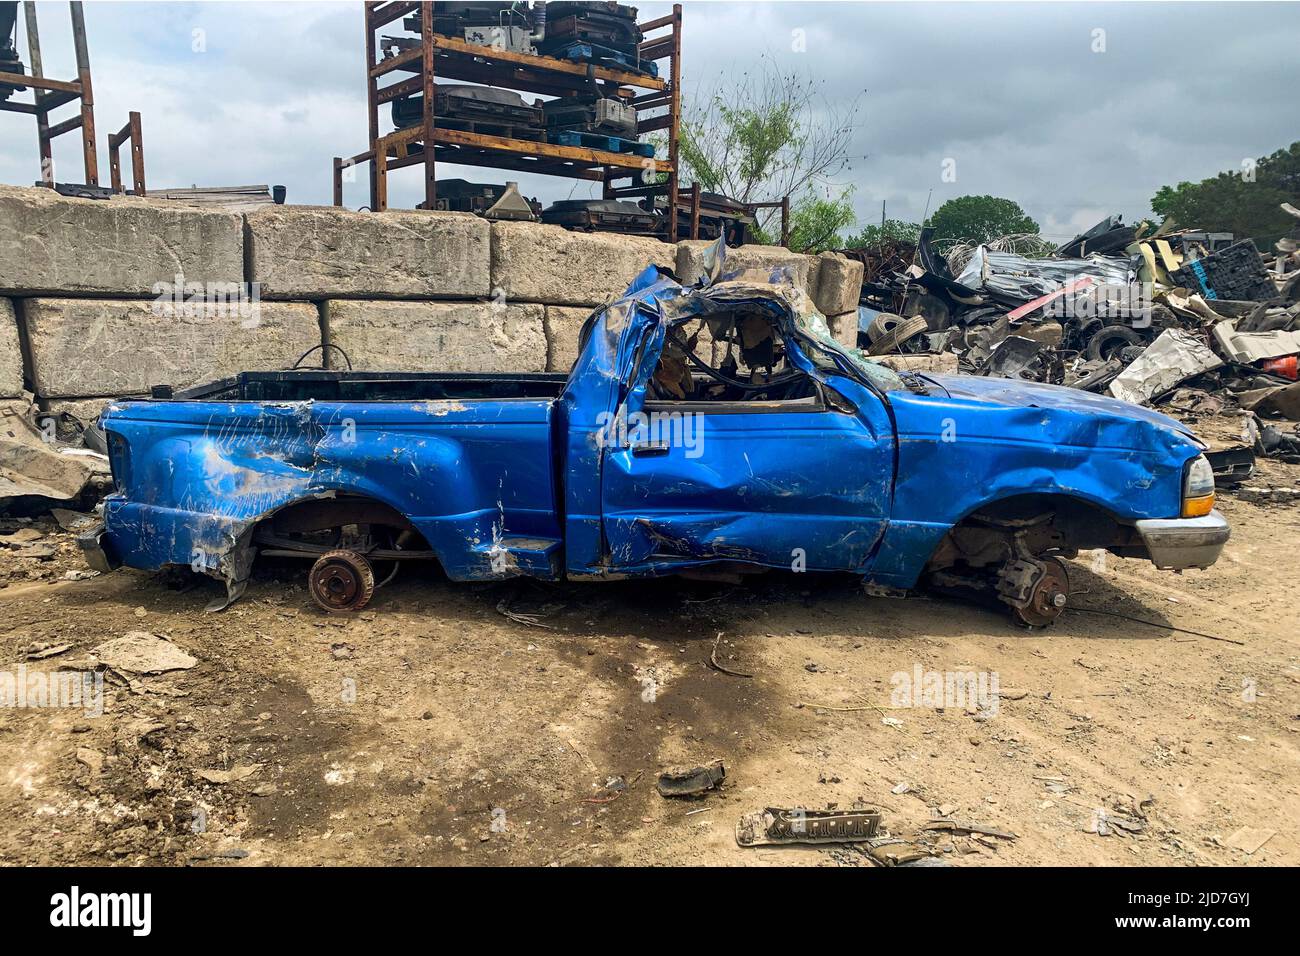 Vue latérale d'un pick-up bleu endommagé sans roues sur le chantier naval après un accident de voiture sur une route, cimetière de voitures, recyclage des automobiles cassées Banque D'Images